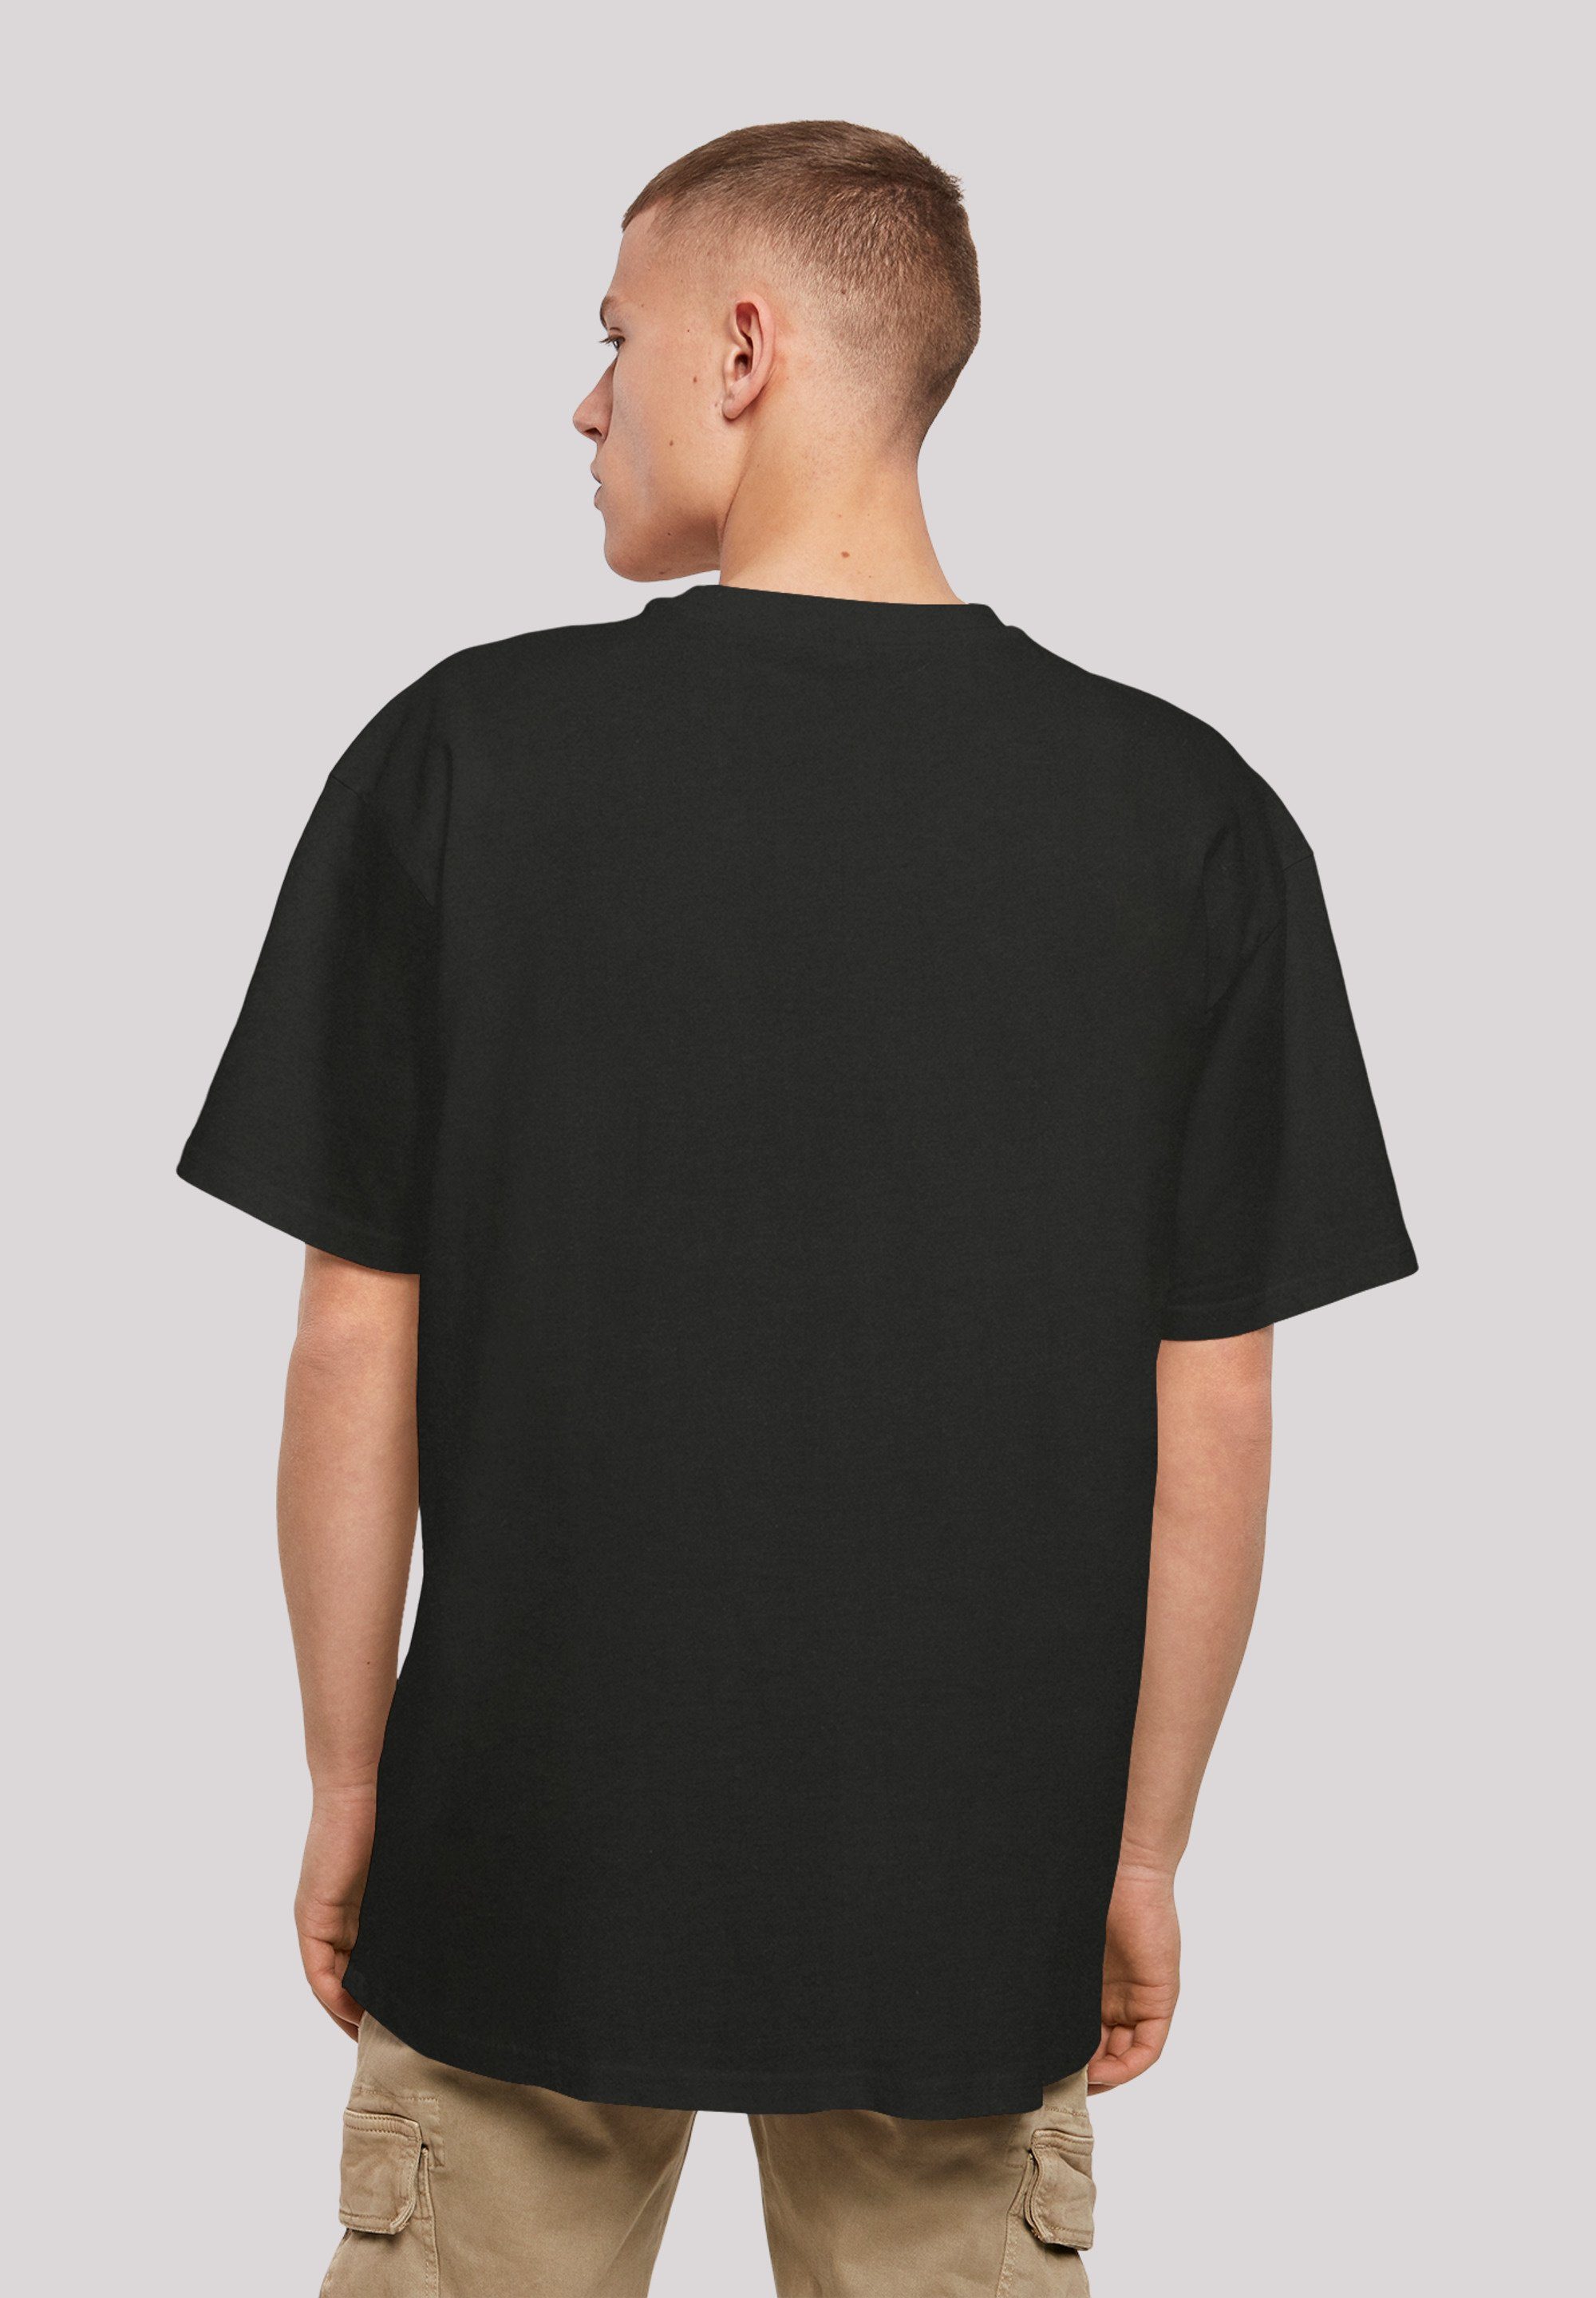 F4NT4STIC Tupac T-Shirt Praying Shakur Print